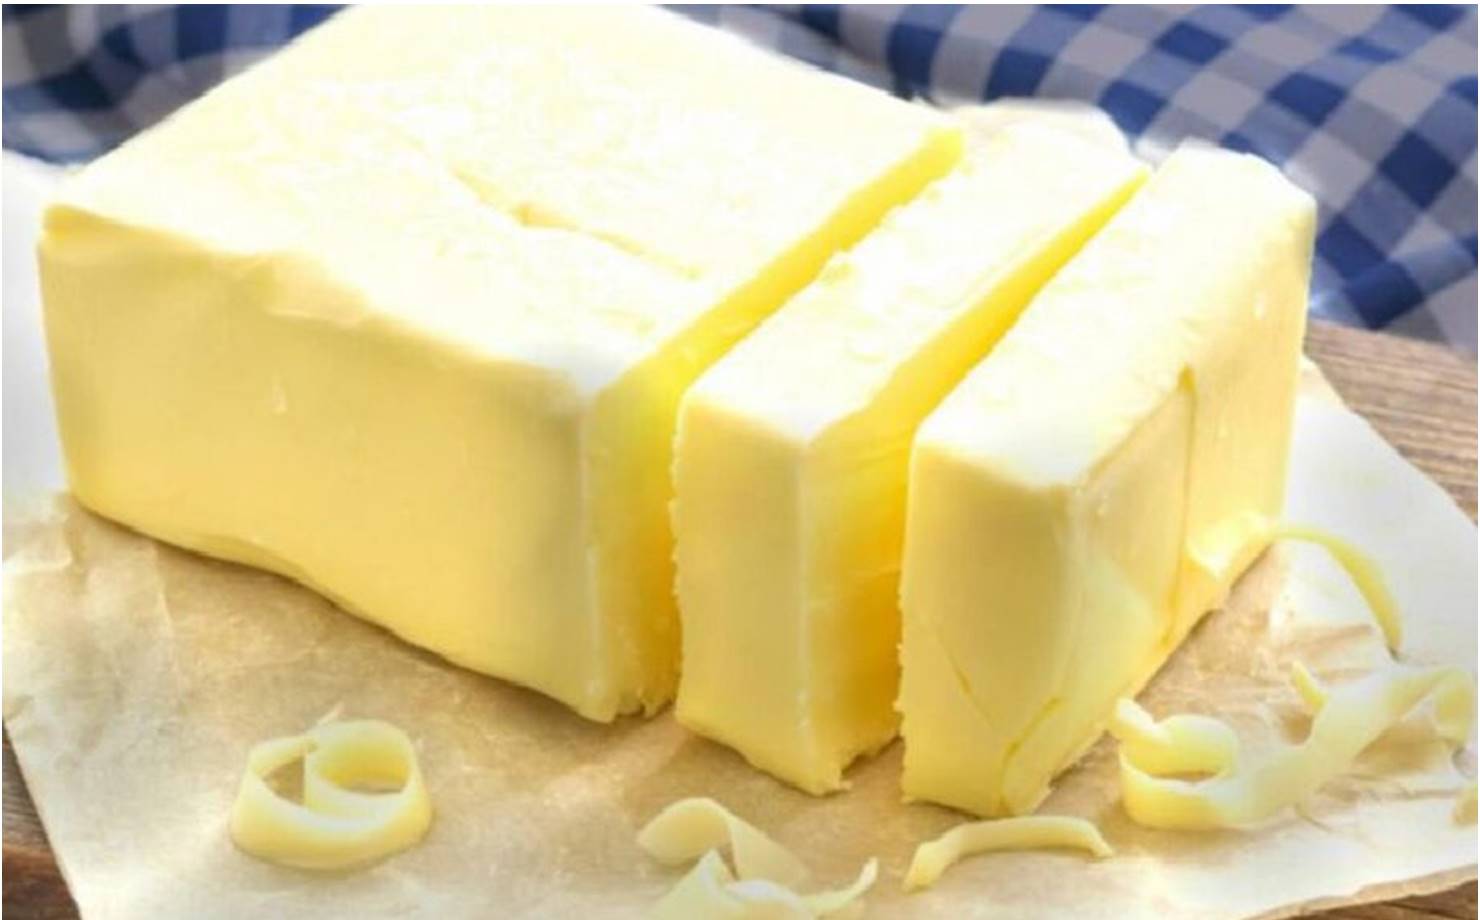 Aprenda a fazer manteiga caseira com apenas 2 ingredientes